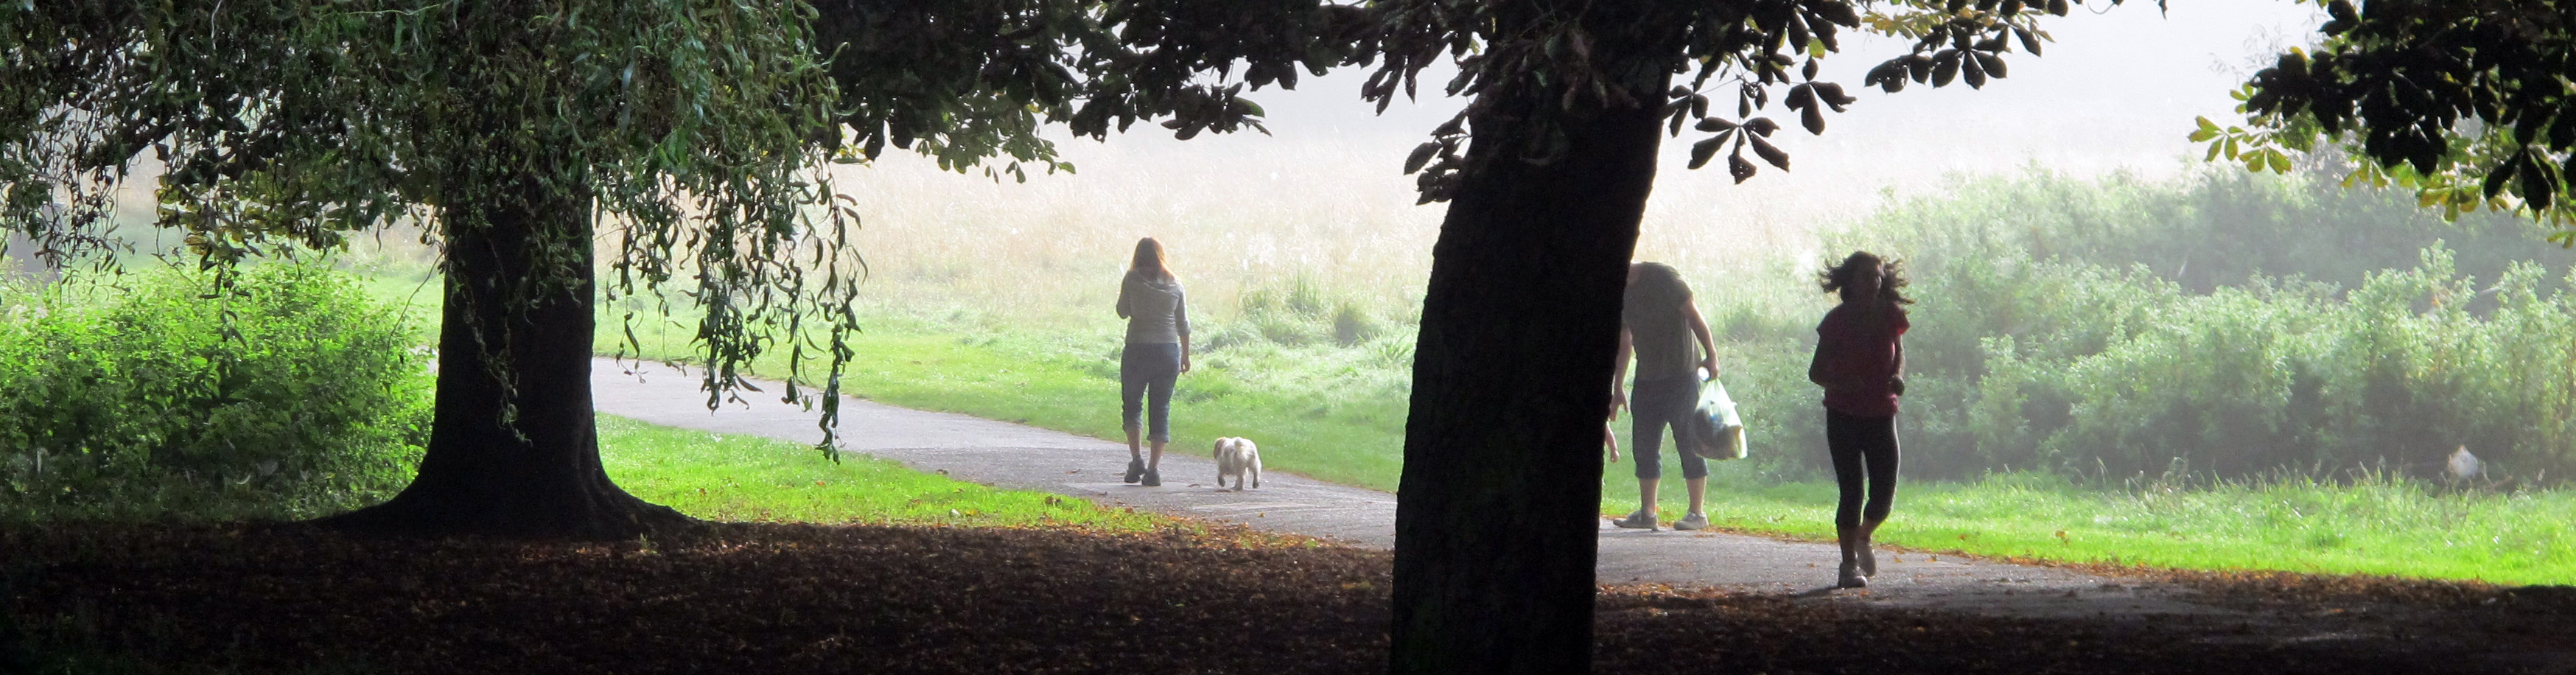 Cassiobury Park, dog walker